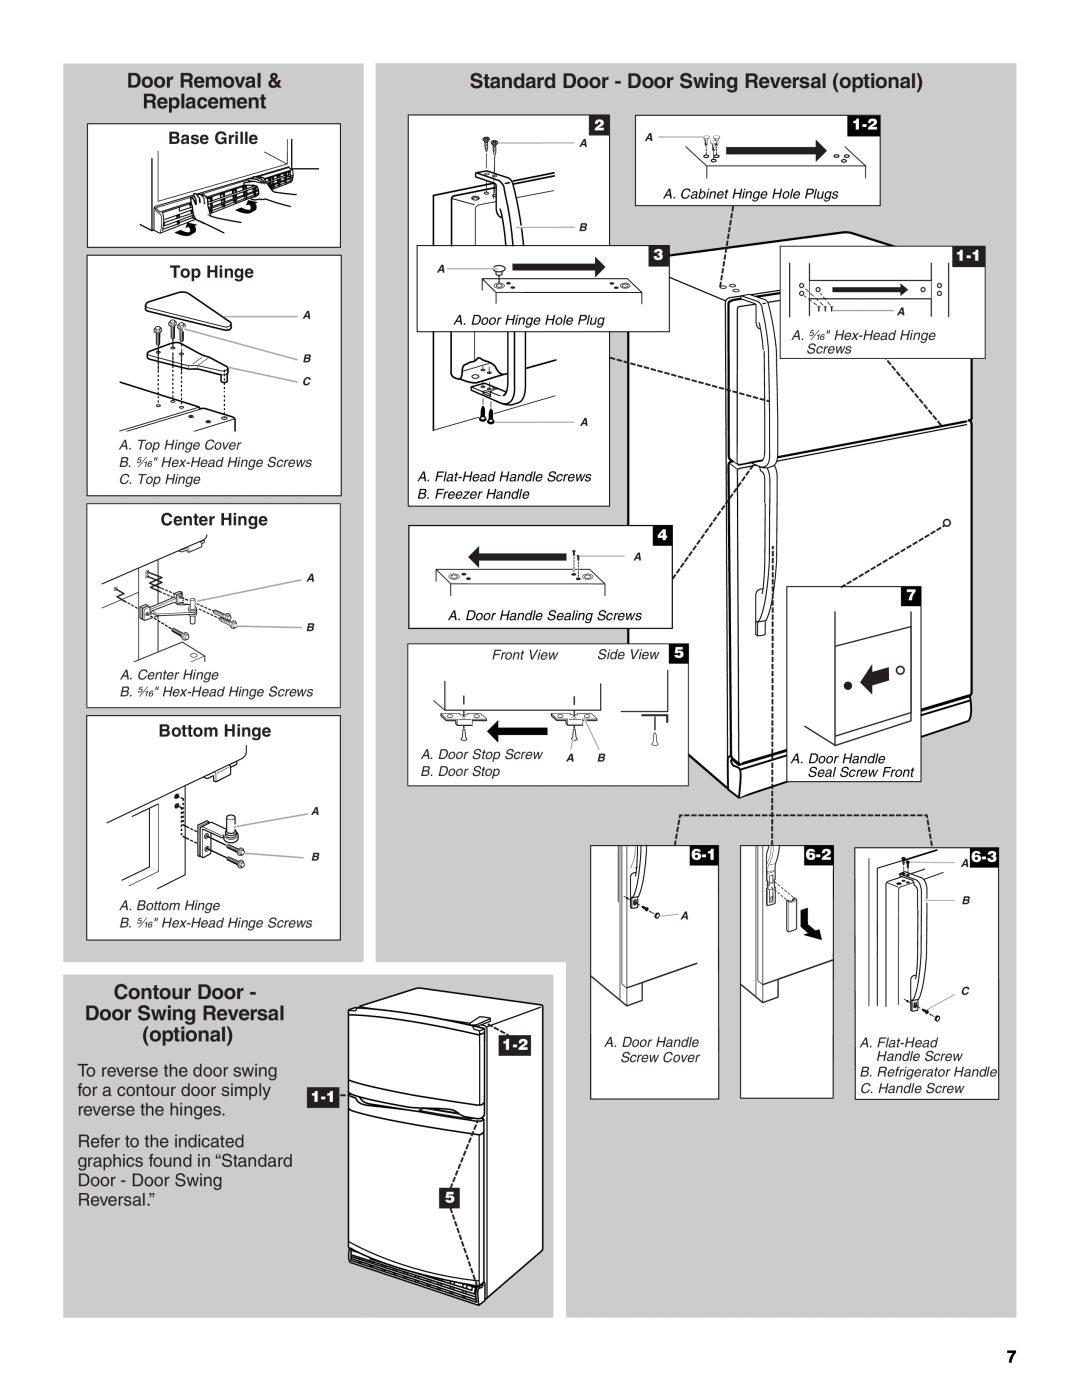 Whirlpool ET1MHKXM Door Removal, Standard Door - Door Swing Reversal optional, Replacement, Contour Door, Reversal.”5 